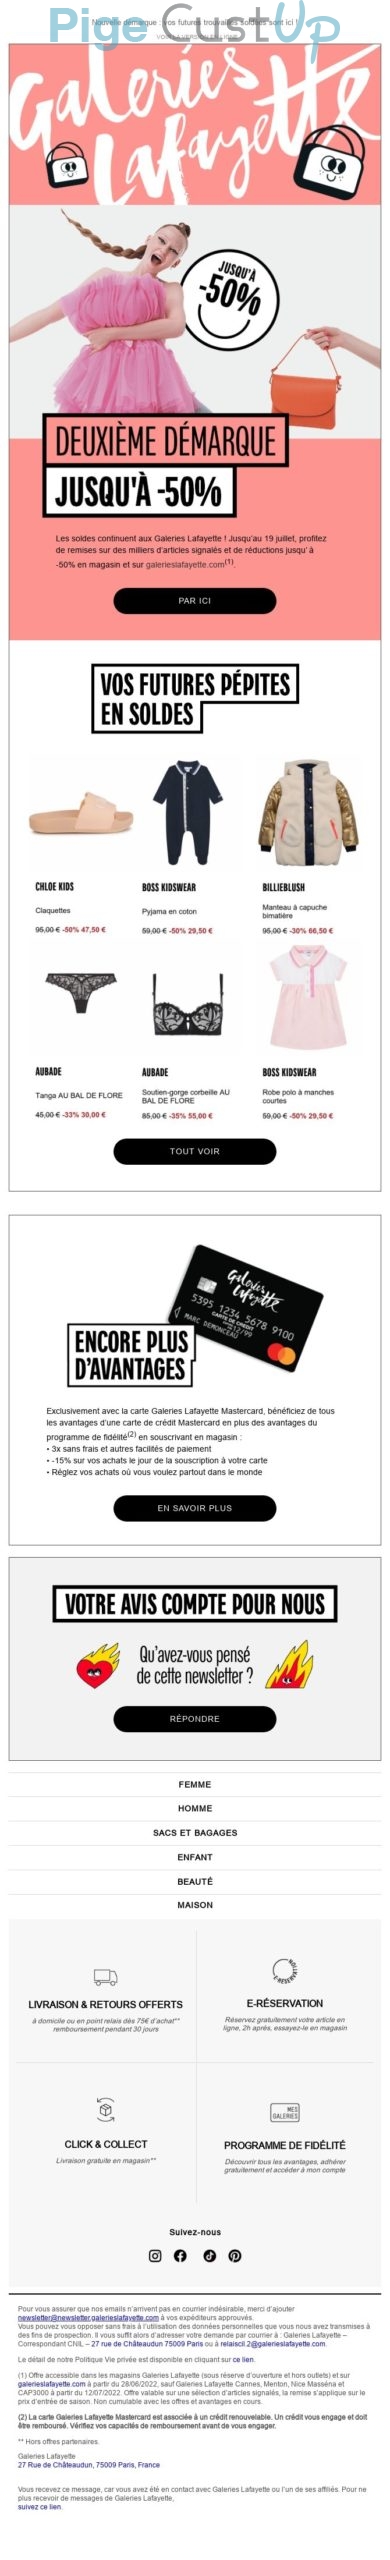 Exemple de Type de media  e-mailing - Galeries Lafayette - Marketing Acquisition - Ventes flash, soldes, demarque, promo, réduction